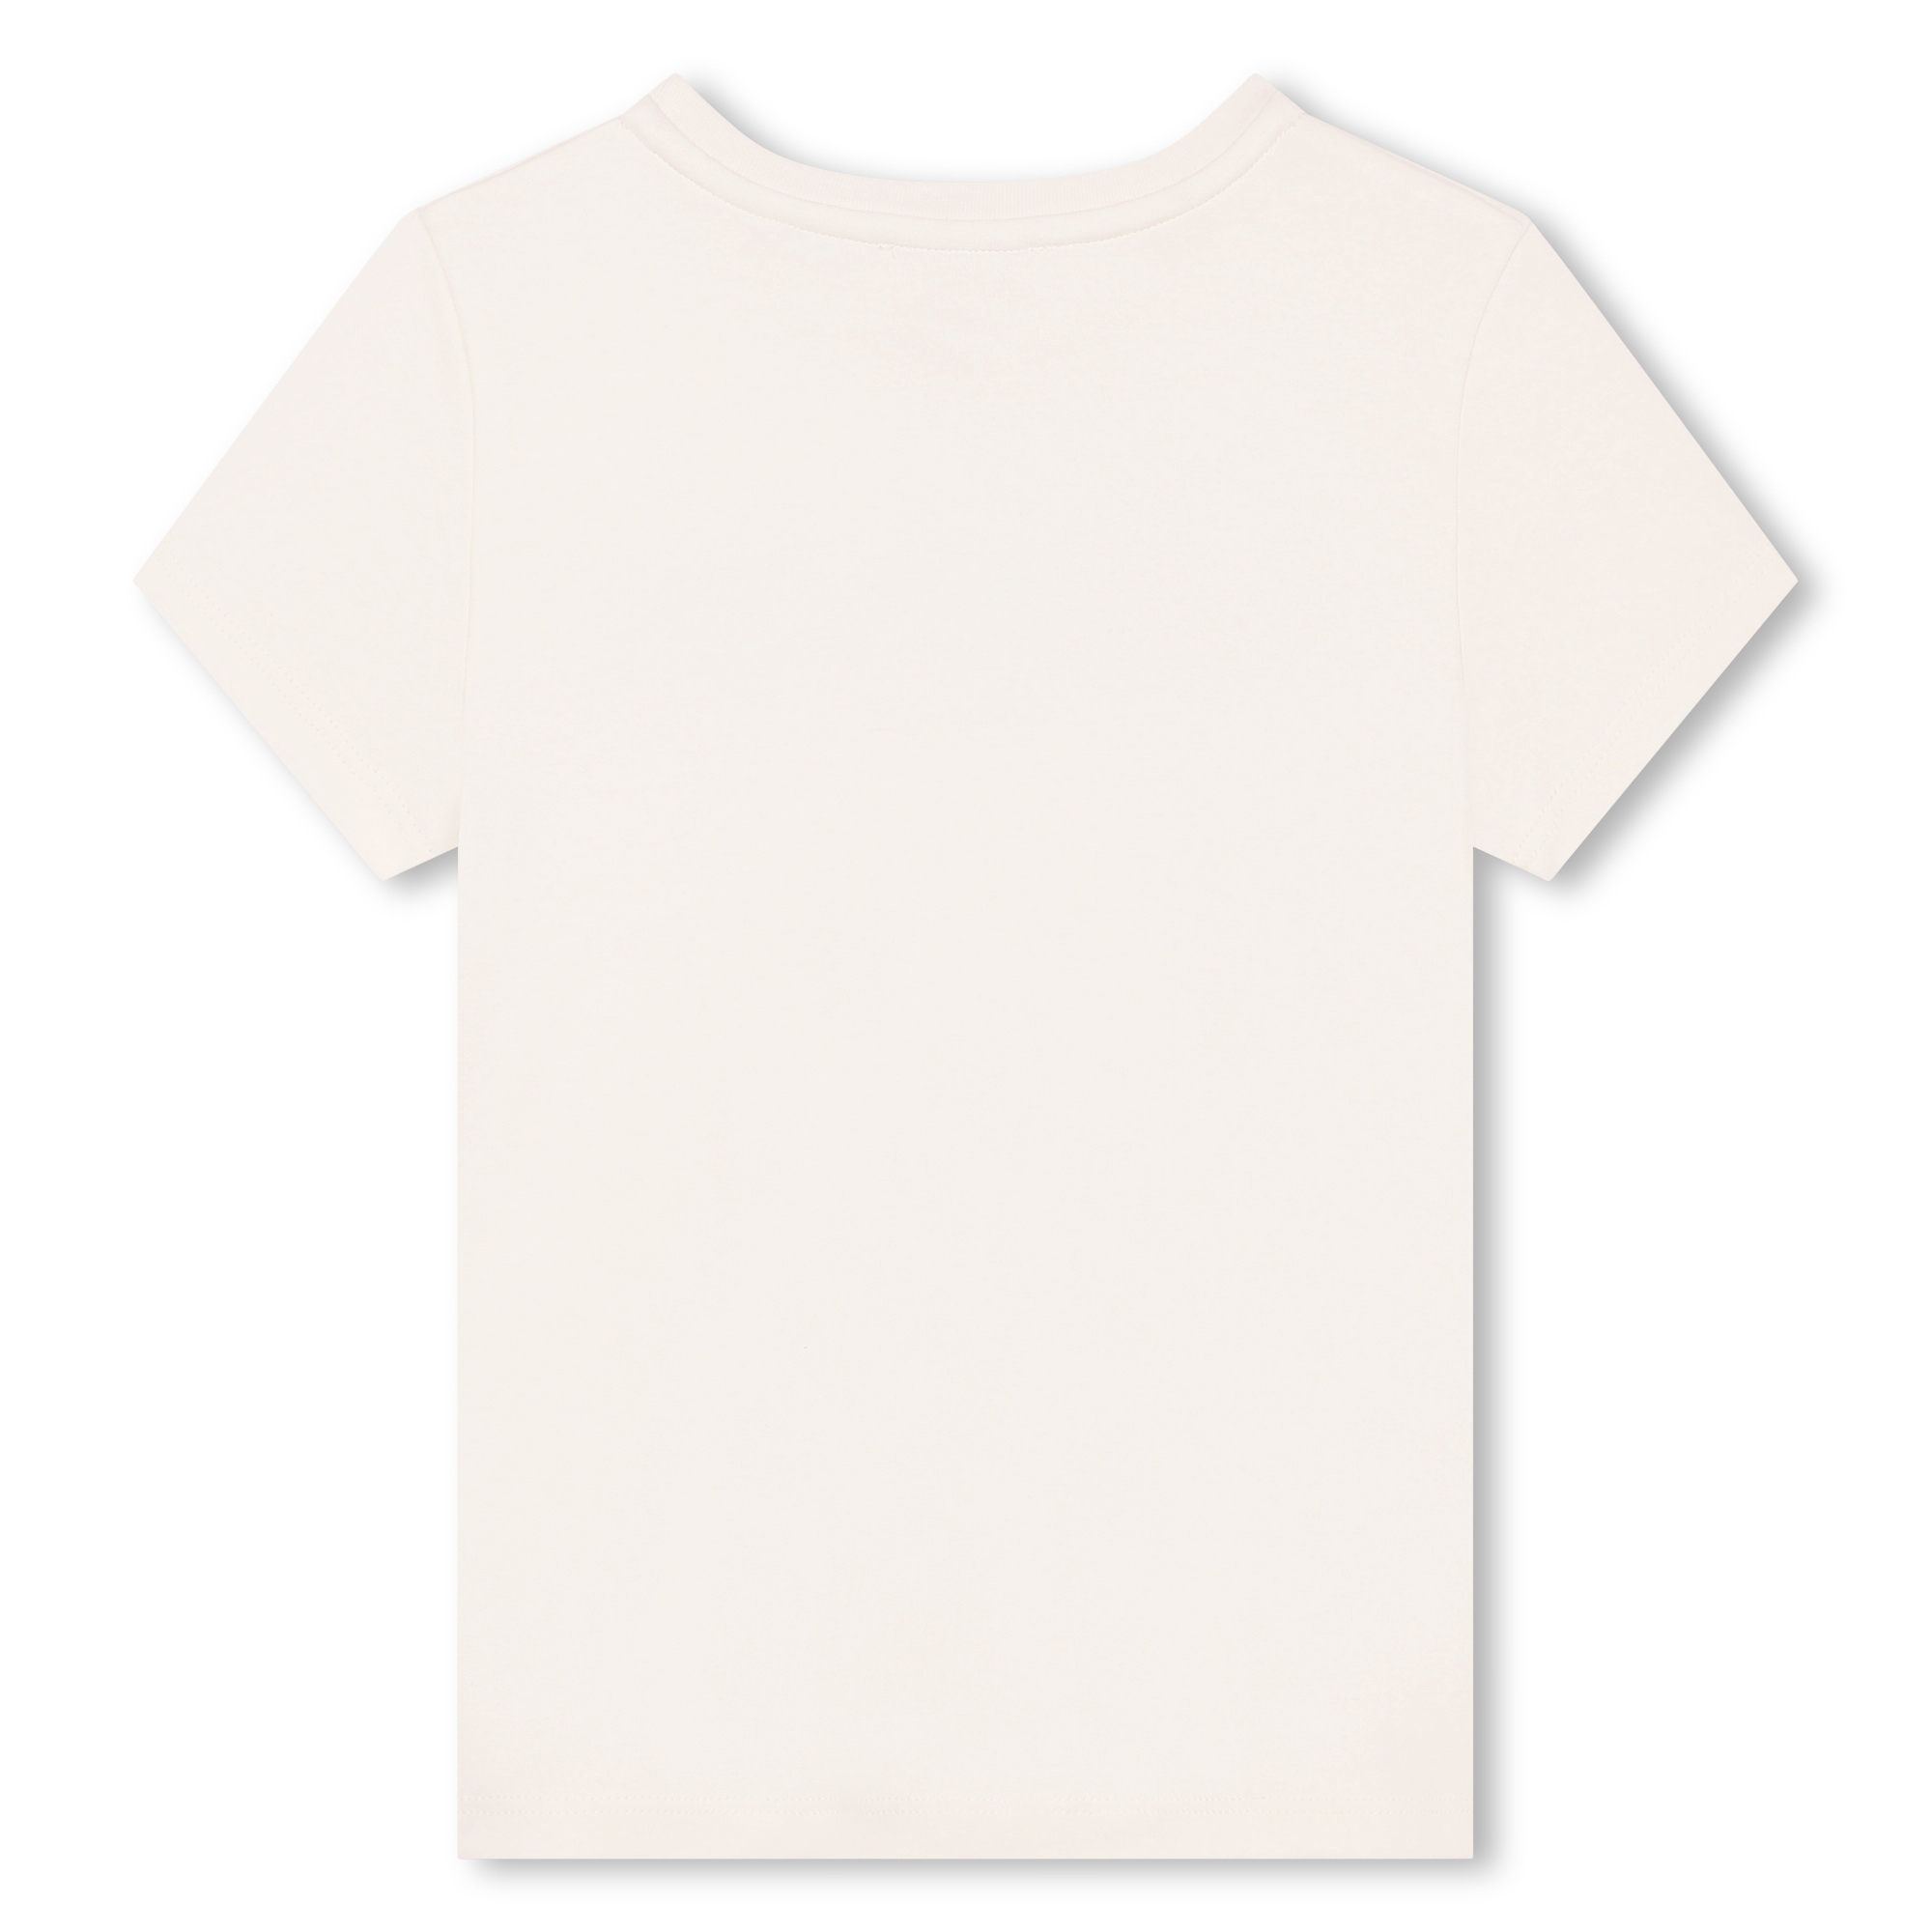 T-shirt maniche corte con logo LANVIN Per BAMBINA